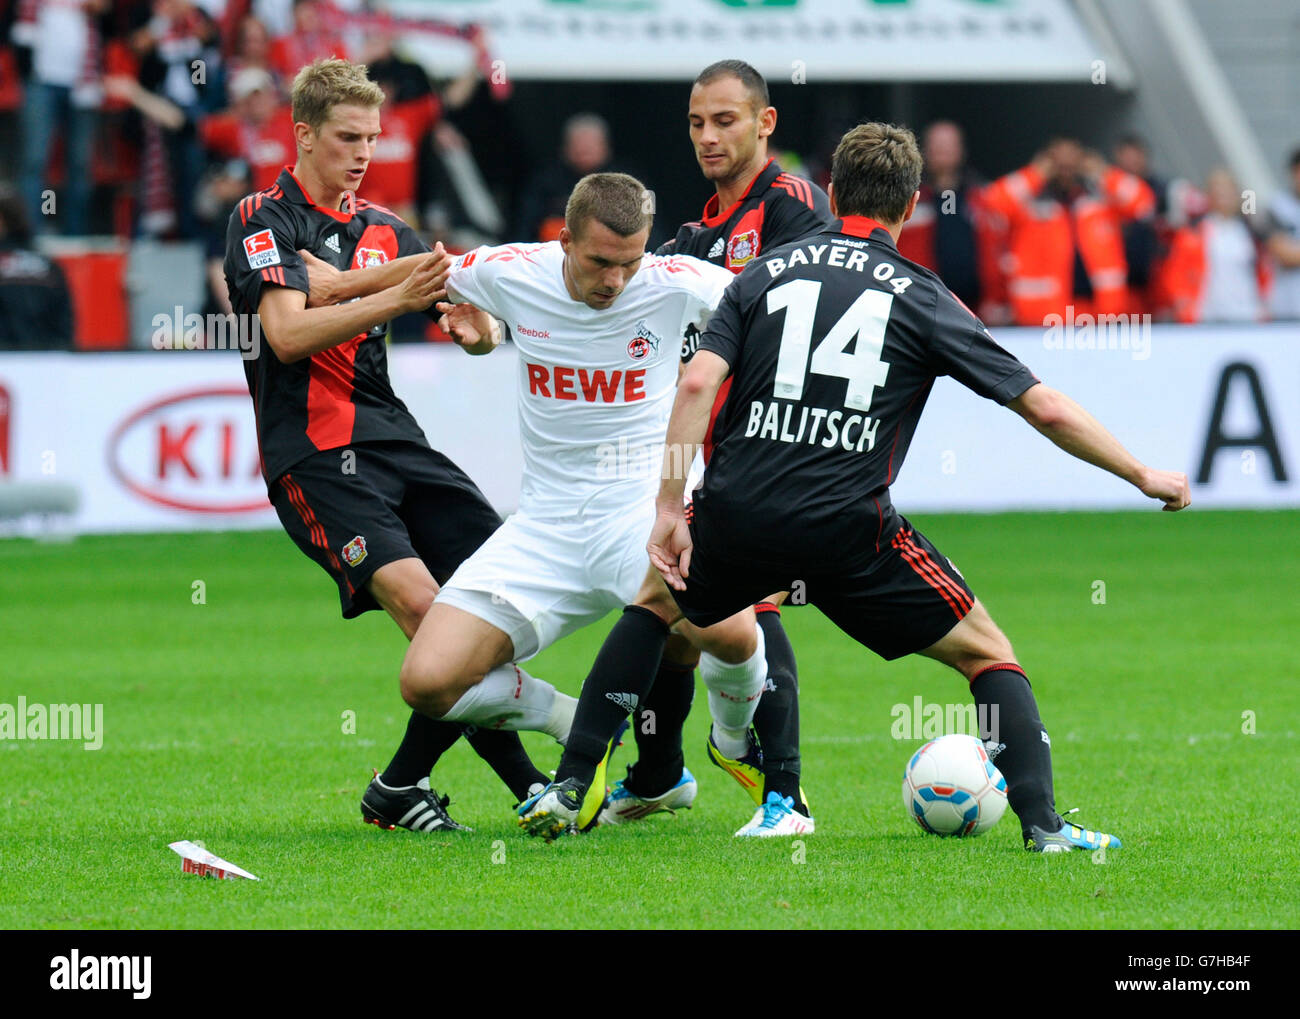 Lars Bender, Leverkusen, Lukas Podolski, Cologne, Oemer Toprak, Leverkusen, Hanno Balitsch, Leverkusen, from left, Bundesliga, Stock Photo